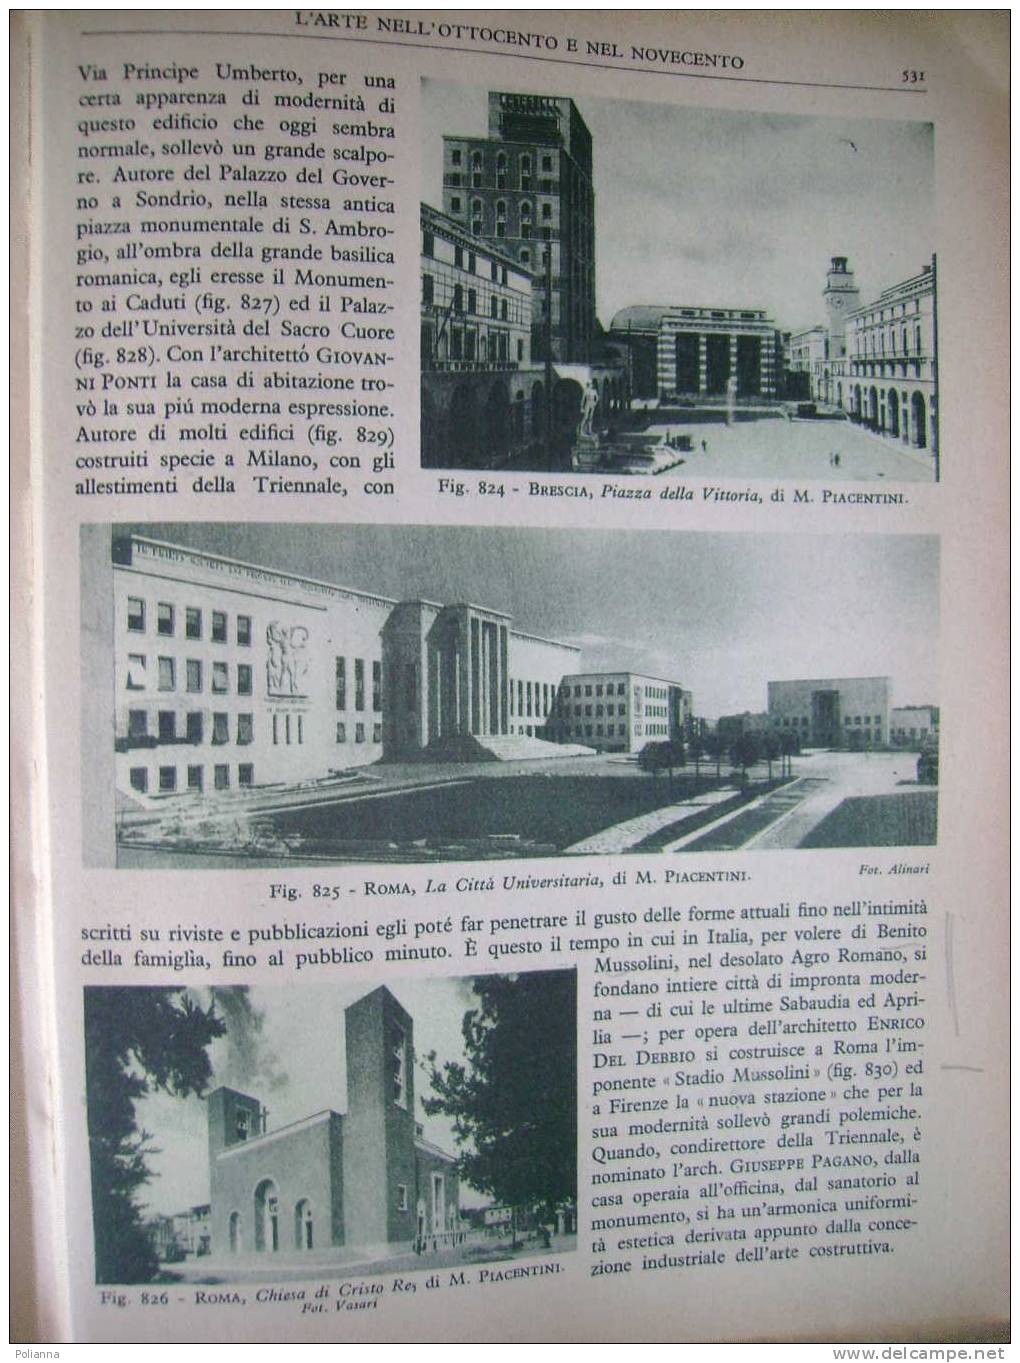 PAE/11 E. Mottini STORIA DELL'ARTE ITALIANA Mondadori 1944 - Arts, Architecture